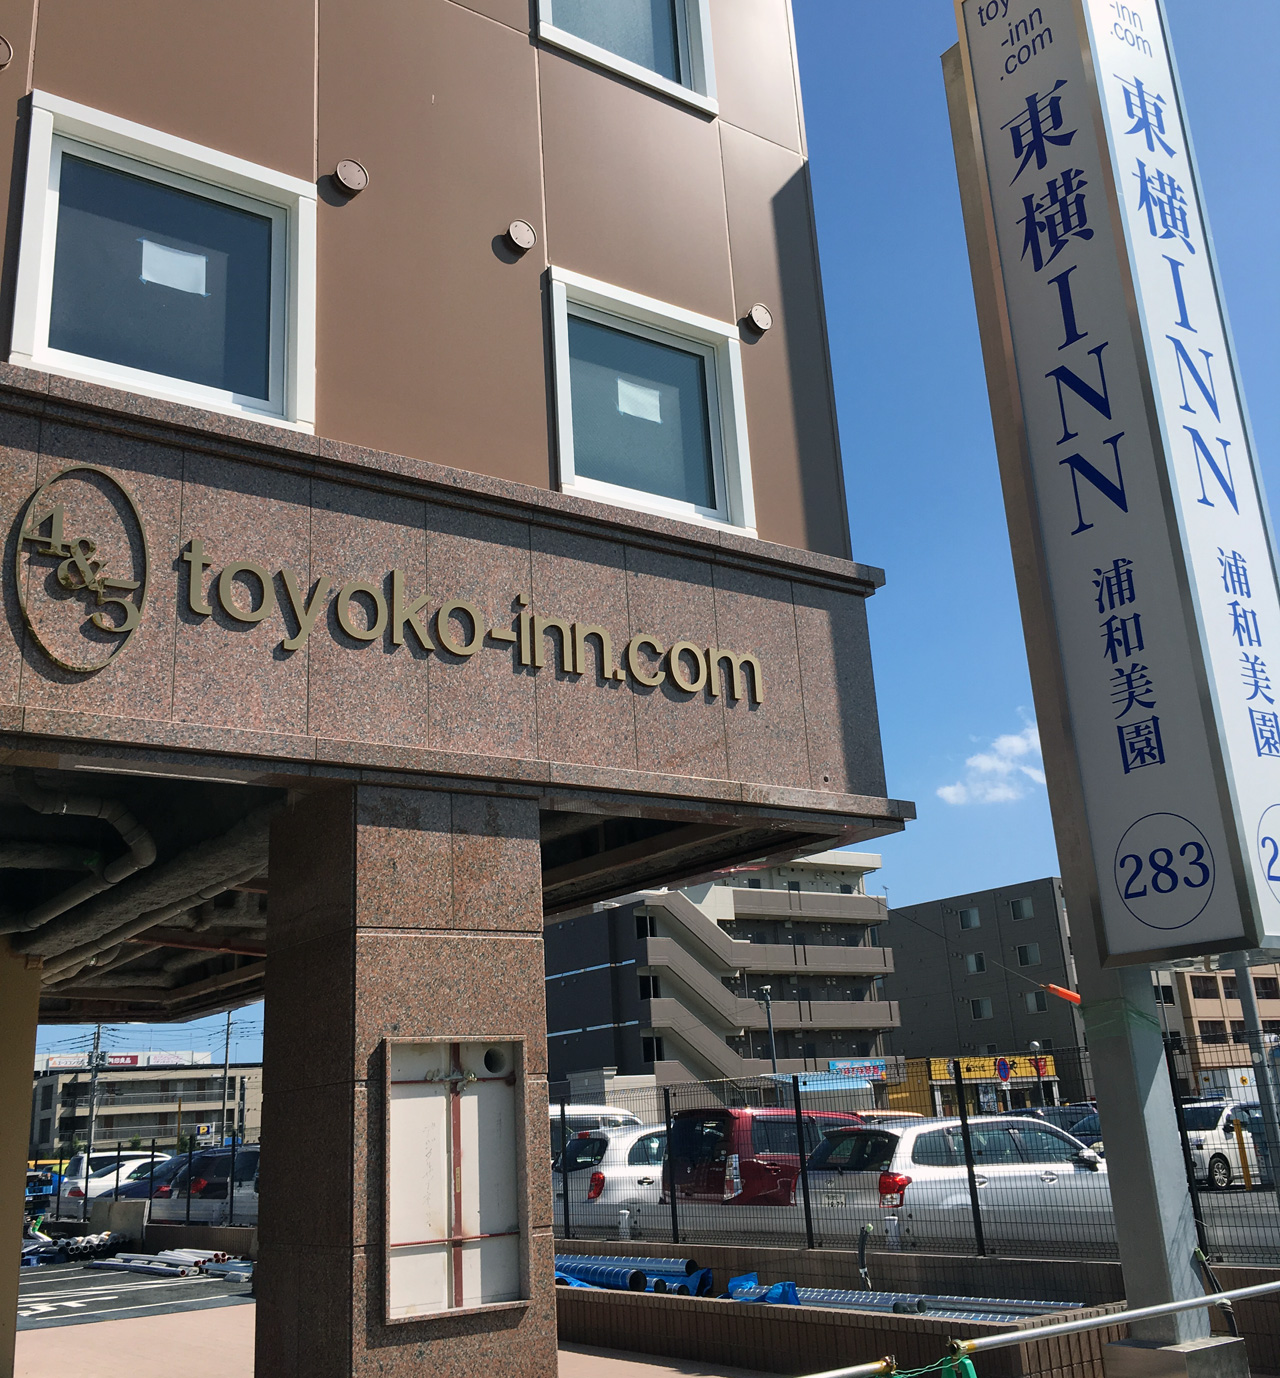 東横イン浦和美園駅東口は 9月13日オープンで決まり ほぼ浦和美園ブログ